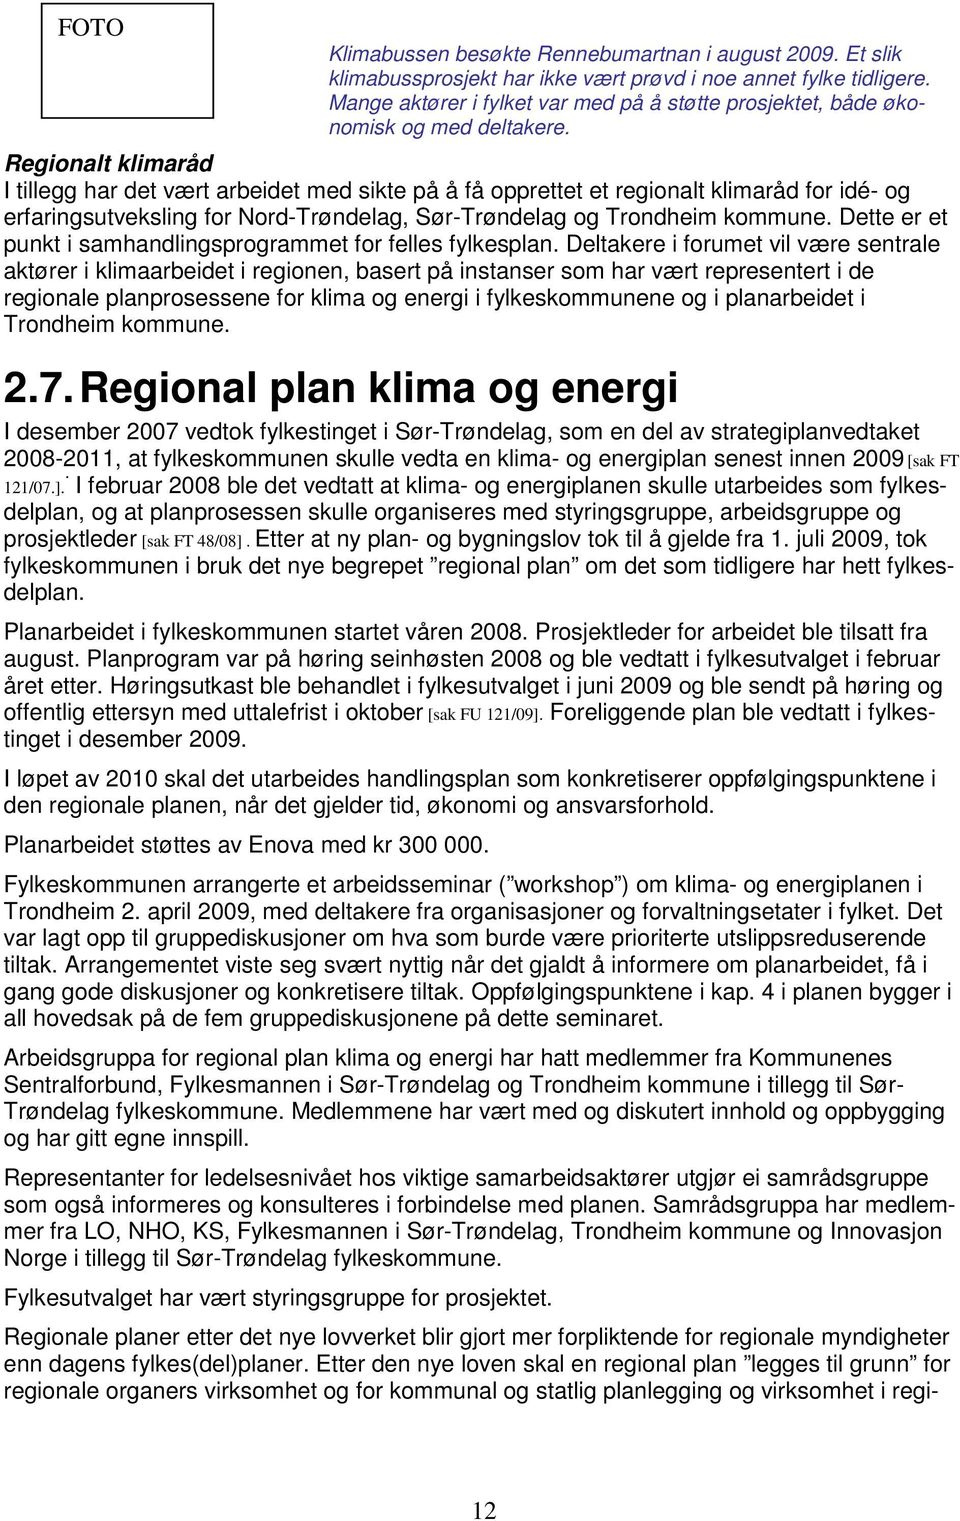 Regionalt klimaråd I tillegg har det vært arbeidet med sikte på å få opprettet et regionalt klimaråd for idé- og erfaringsutveksling for Nord-Trøndelag, Sør-Trøndelag og Trondheim kommune.